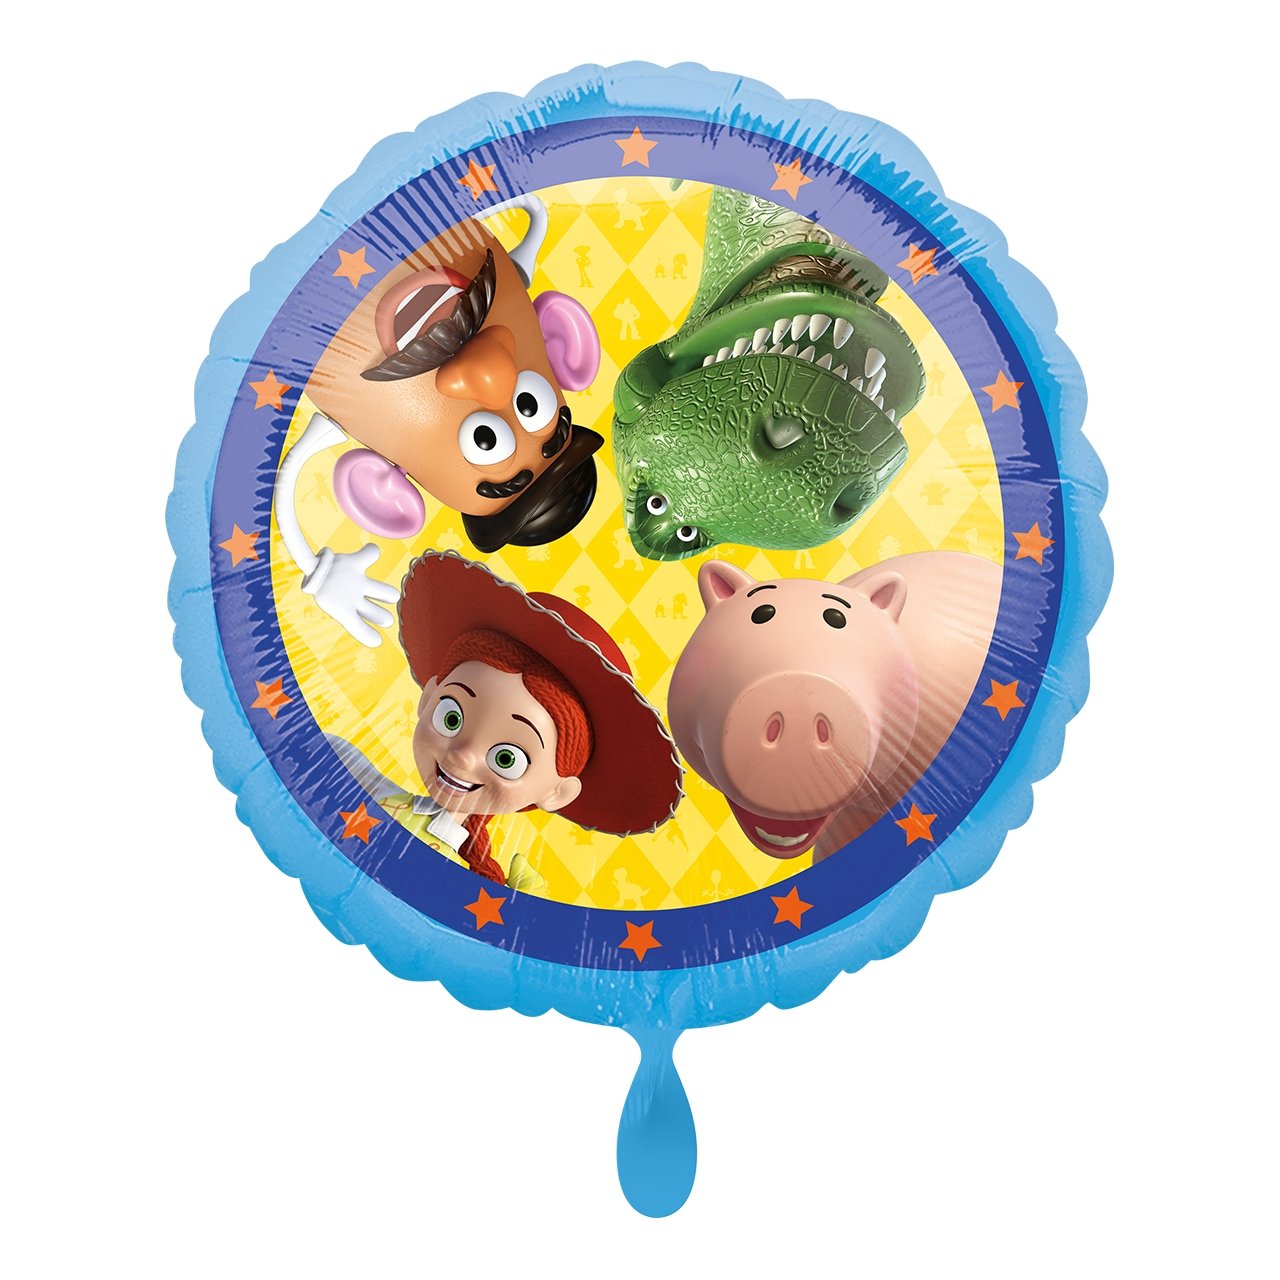 Partykarton "Toy Story" 12 Teile - Party im Karton